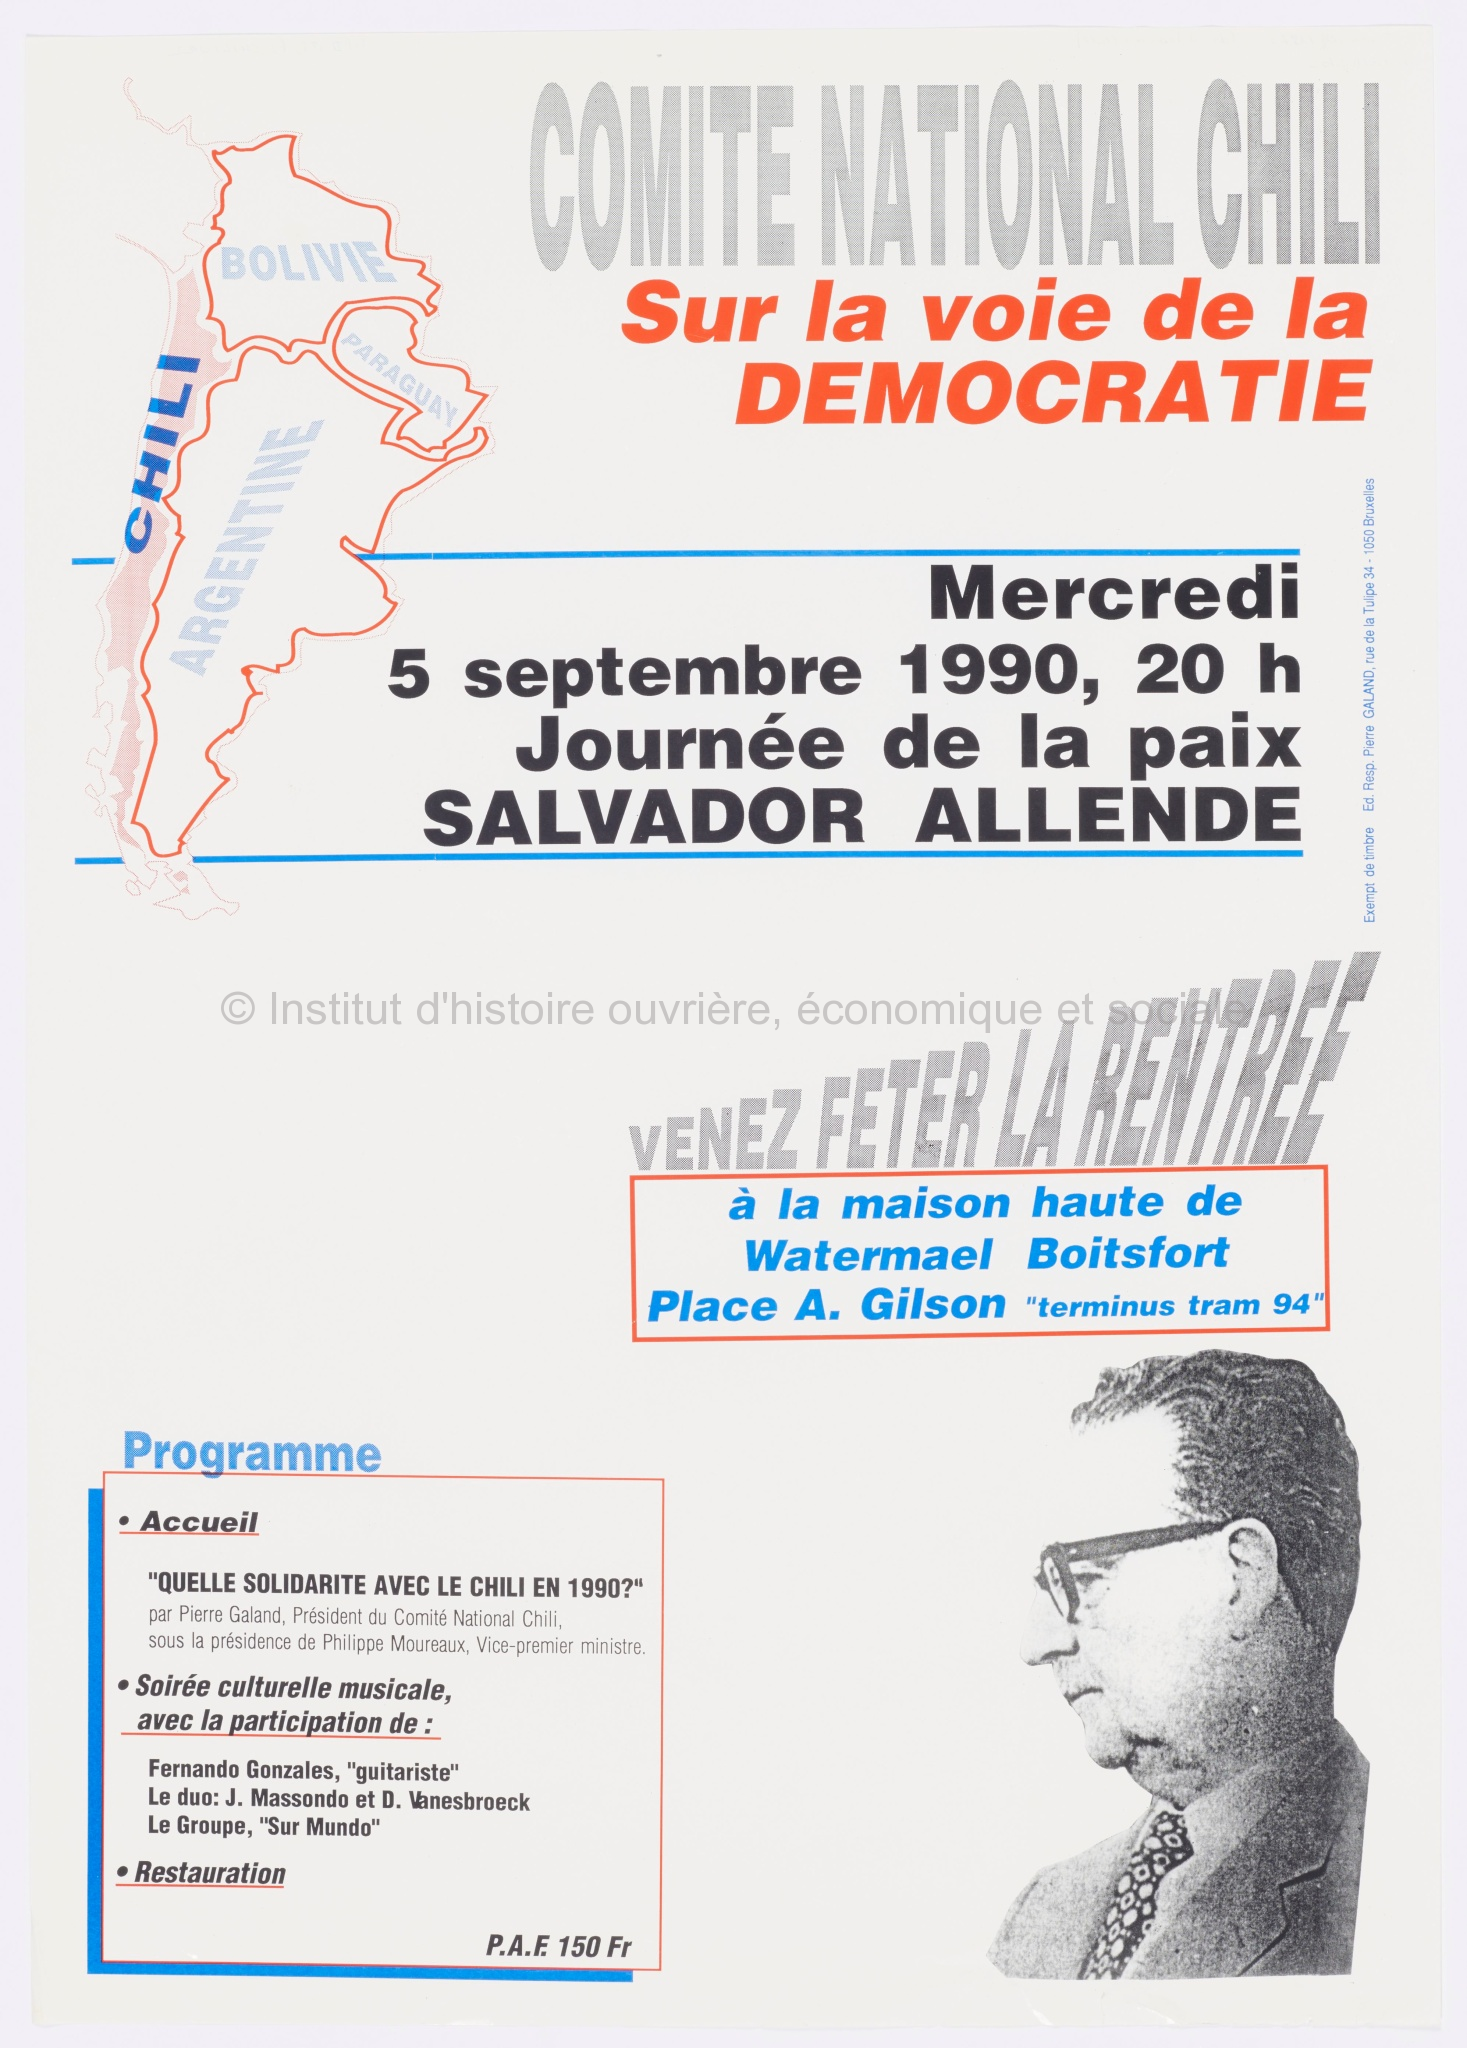 Comité national Chili. Sur la voie de la démocratie. Mercredi 5 septembre 1990, 20h Journée de la paix Salvador Allende